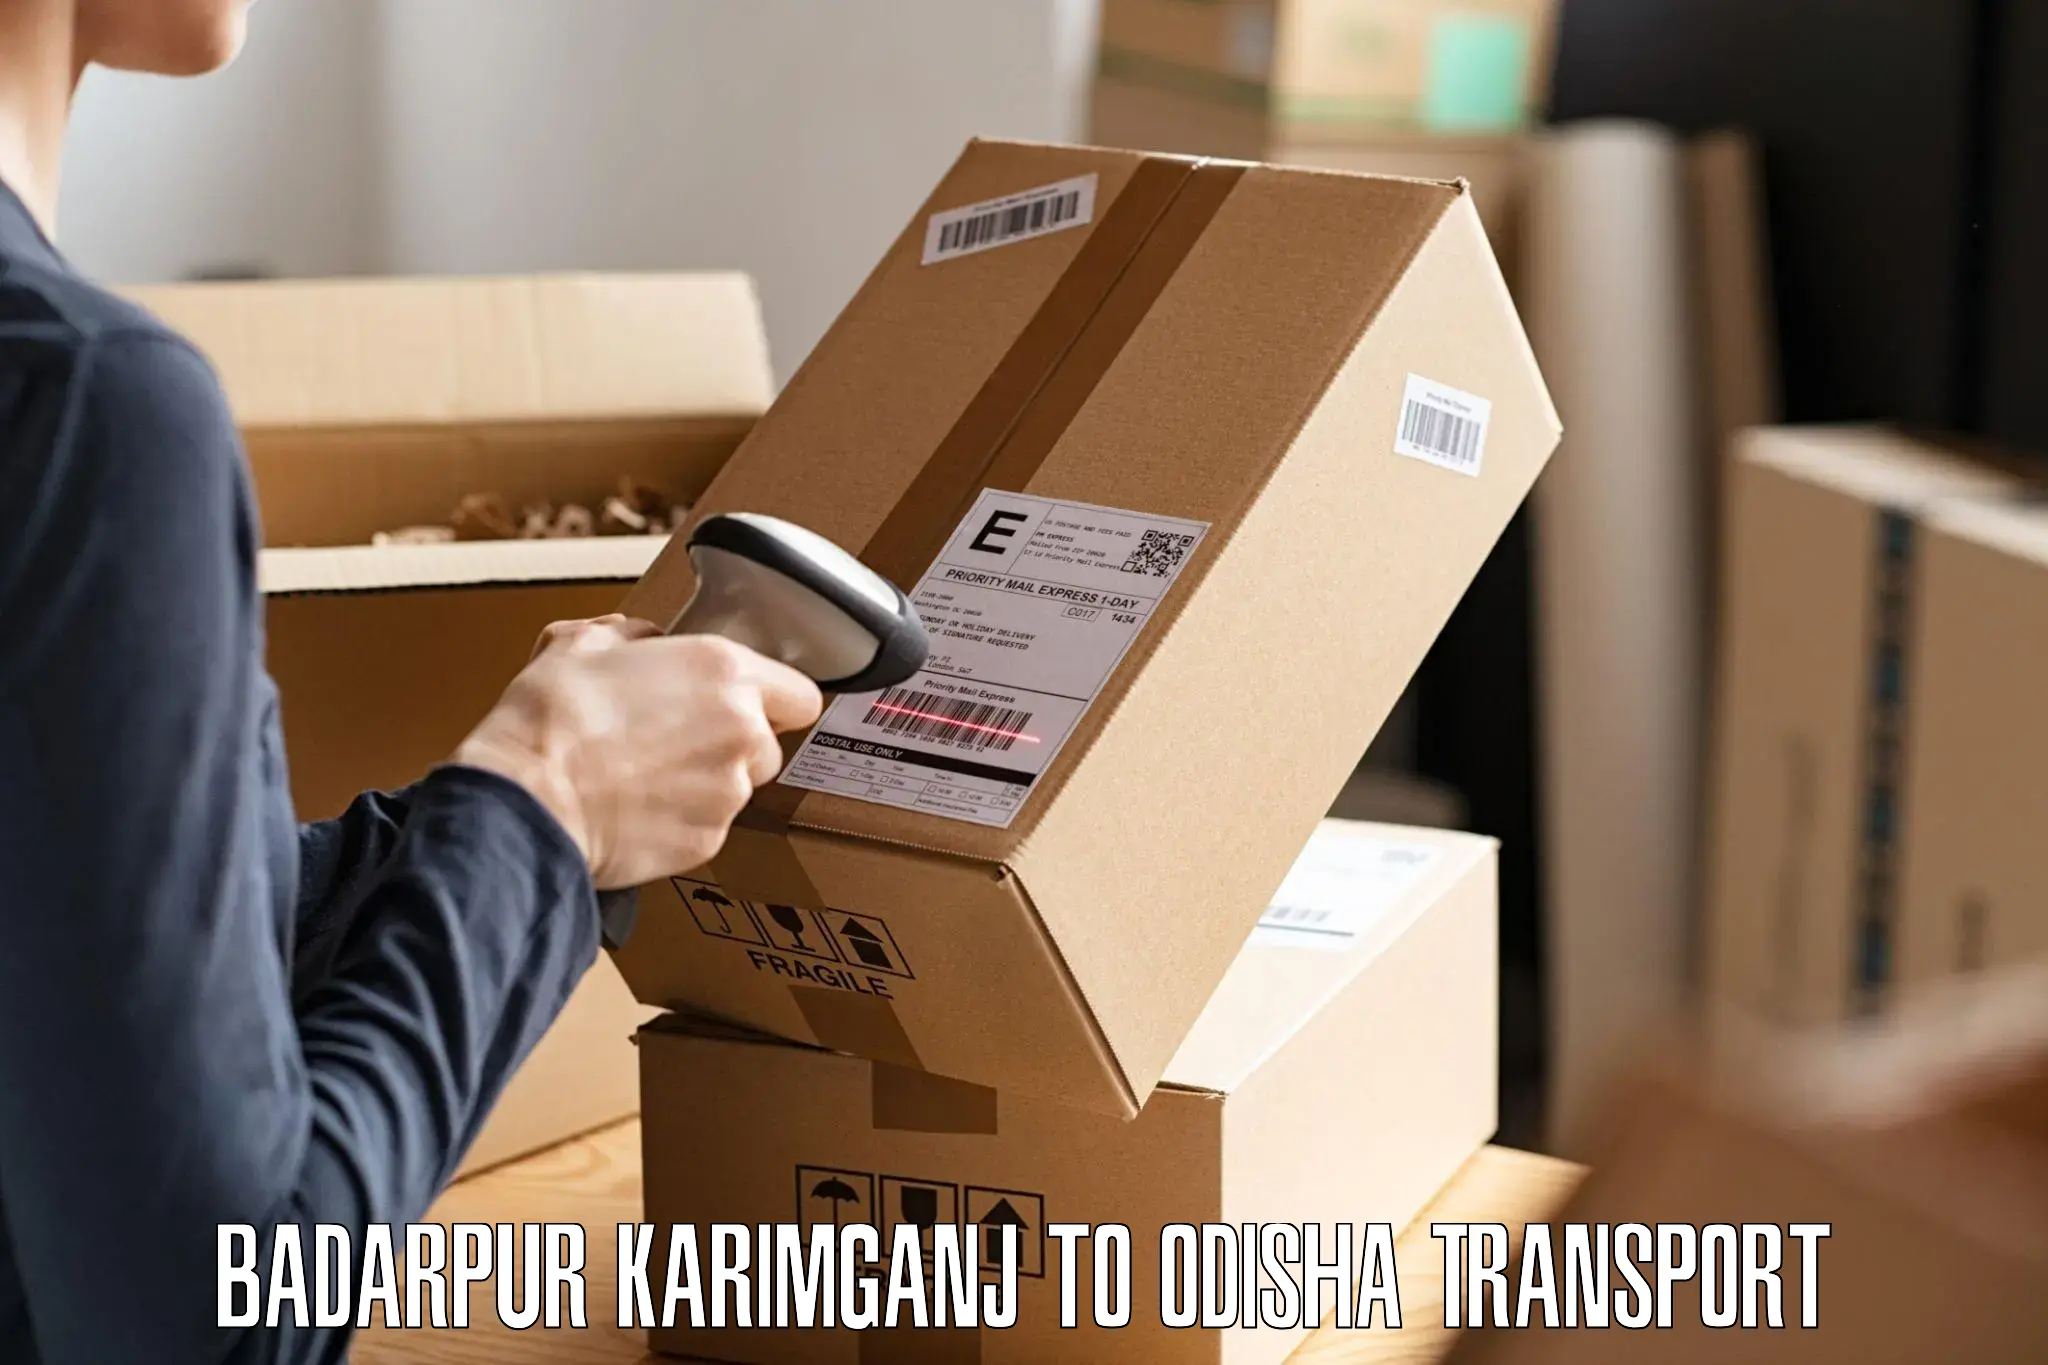 Two wheeler parcel service Badarpur Karimganj to Kandhamal